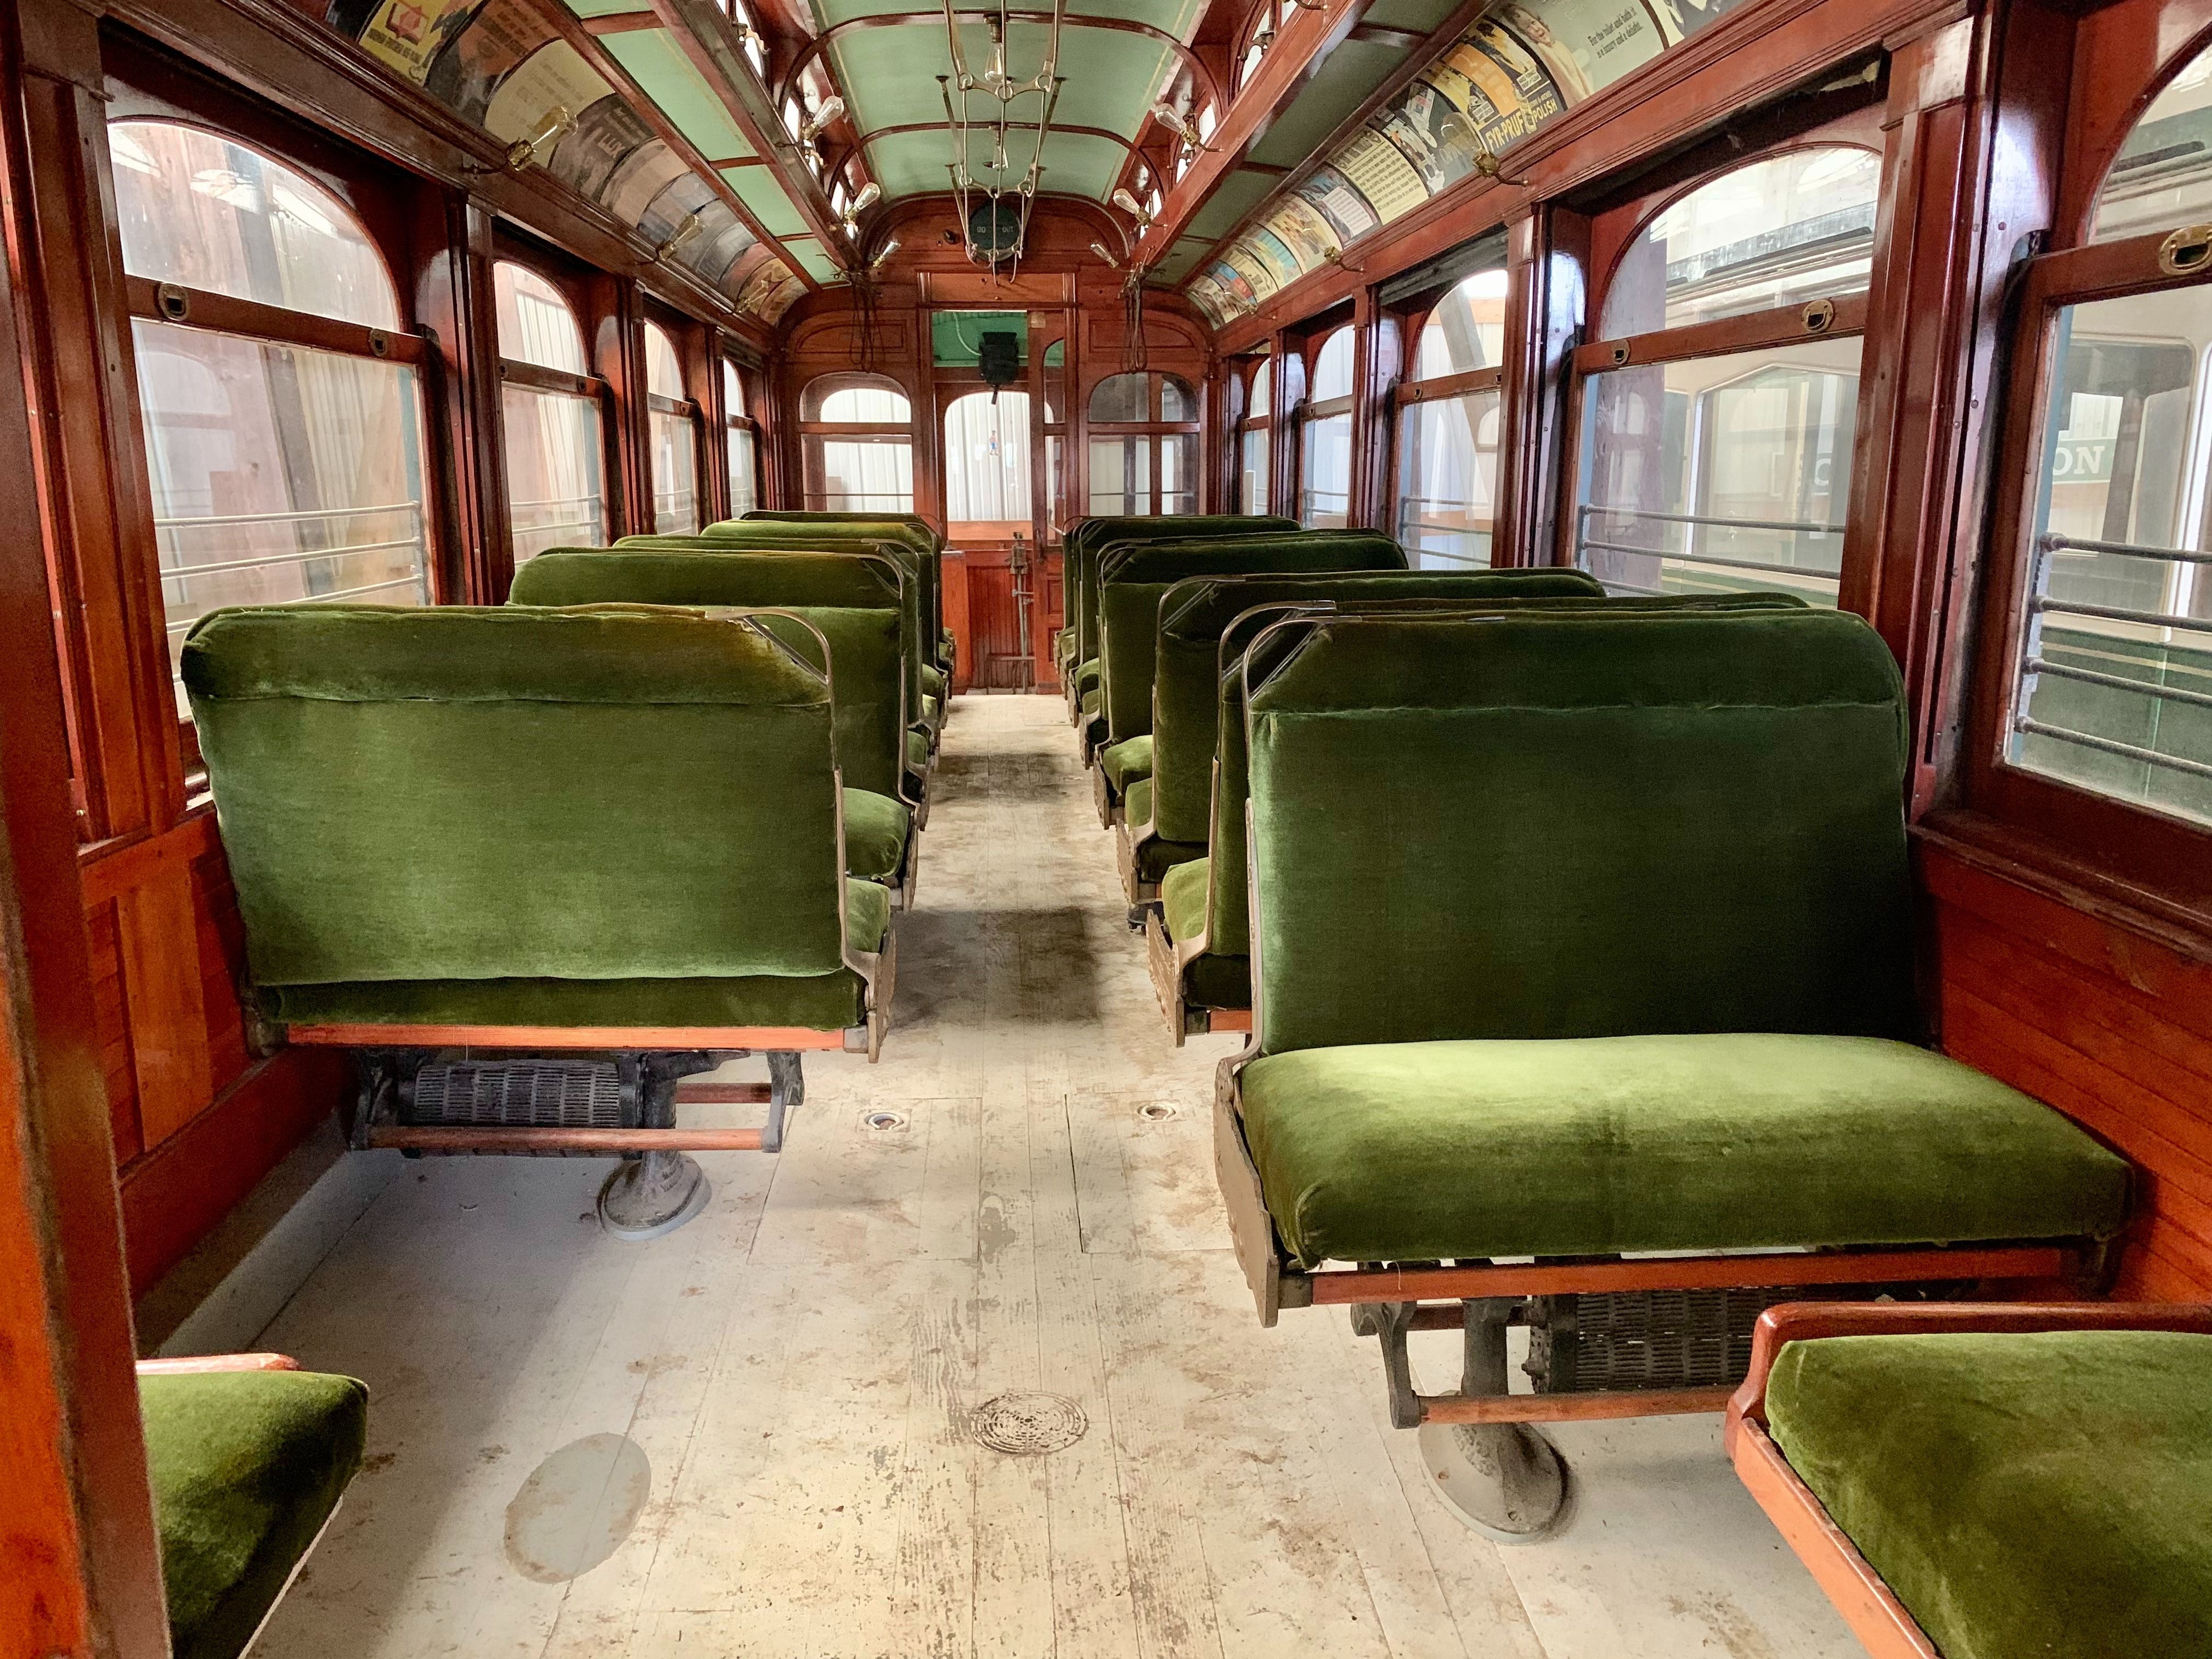 assentos de veludo verde em um carrinho vintage